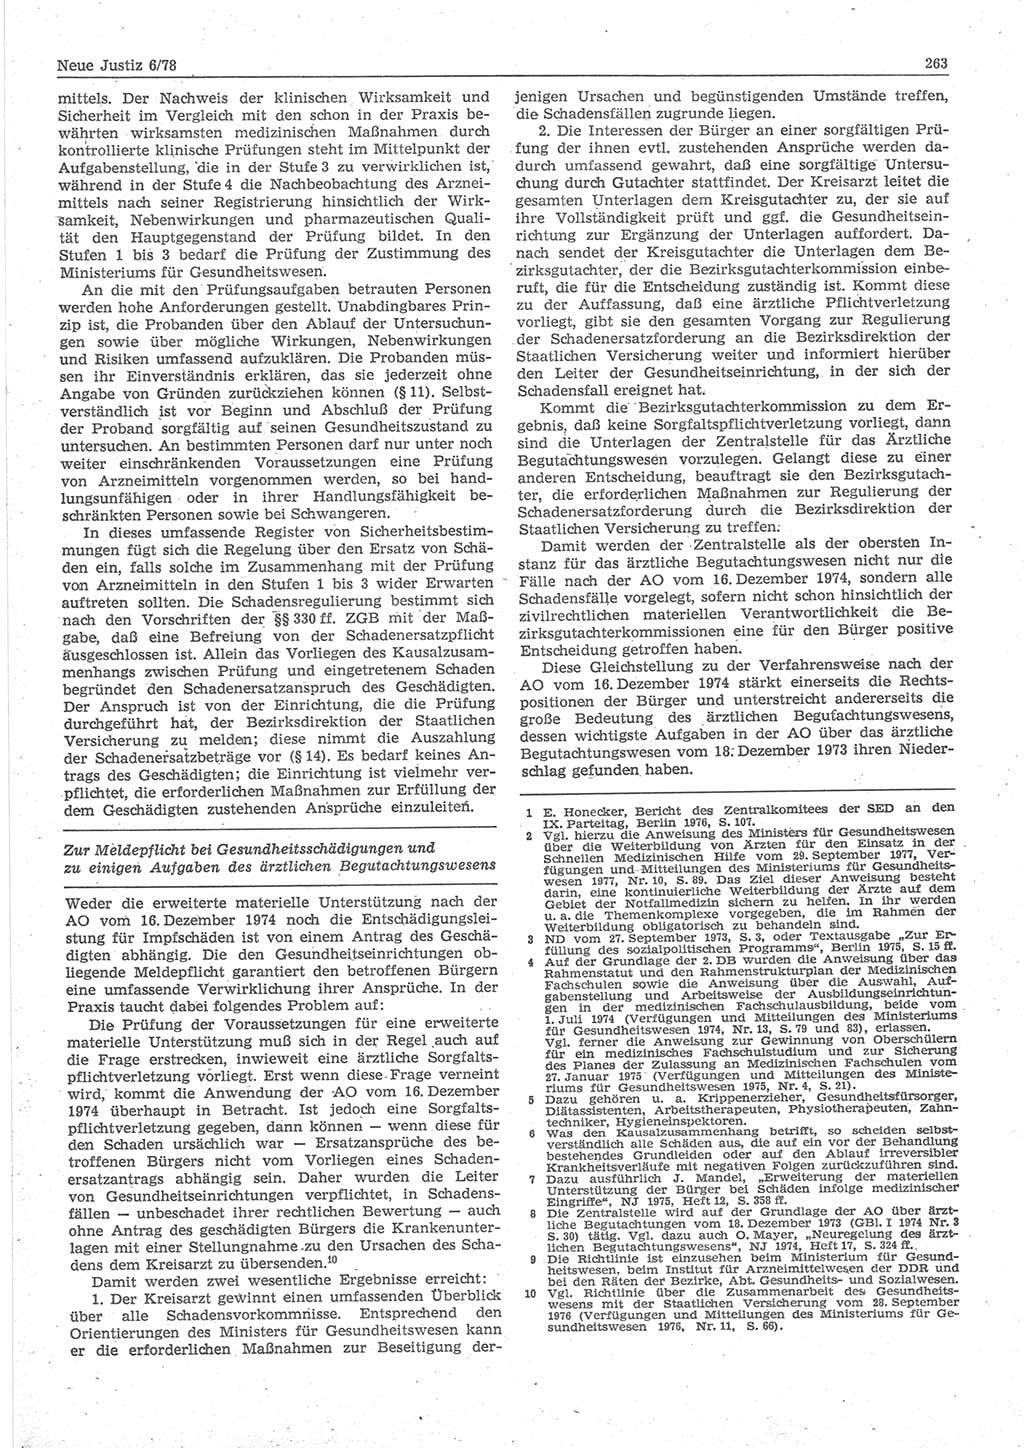 Neue Justiz (NJ), Zeitschrift für sozialistisches Recht und Gesetzlichkeit [Deutsche Demokratische Republik (DDR)], 32. Jahrgang 1978, Seite 263 (NJ DDR 1978, S. 263)